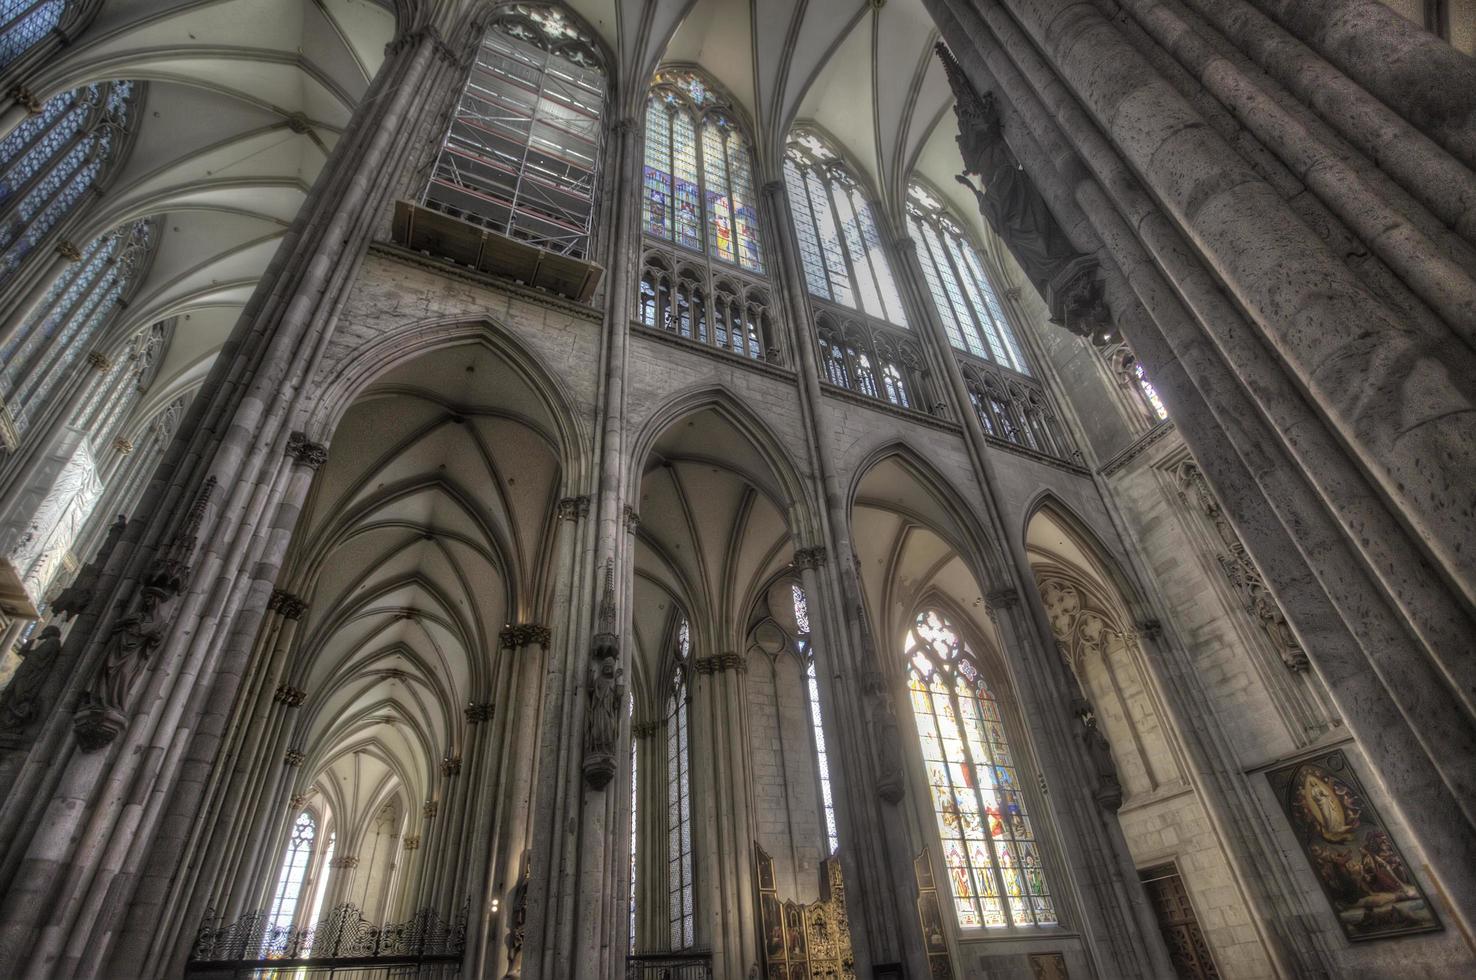 Colonia, Alemania, 28 de febrero de 2015 - Detalle de la catedral de Colonia en Alemania. es sede del arzobispo de colonia y administración de la arquidiócesis de colonia. foto